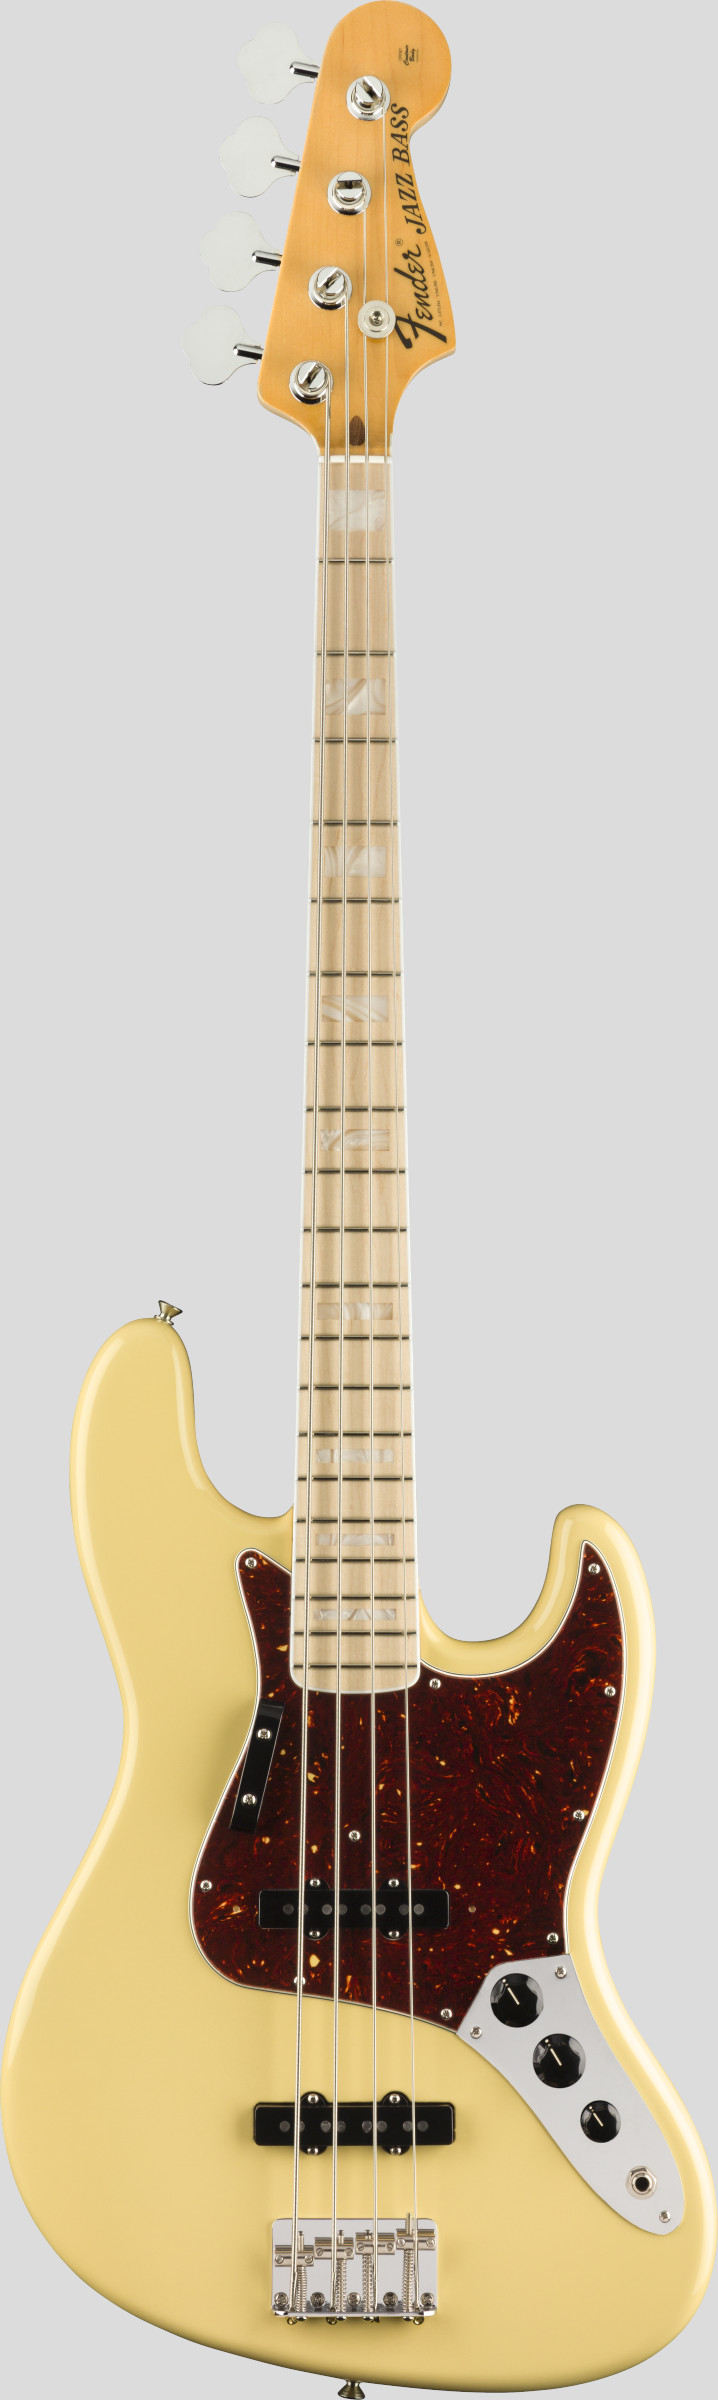 Fender 70 Jazz Bass American Original Vintage White 1